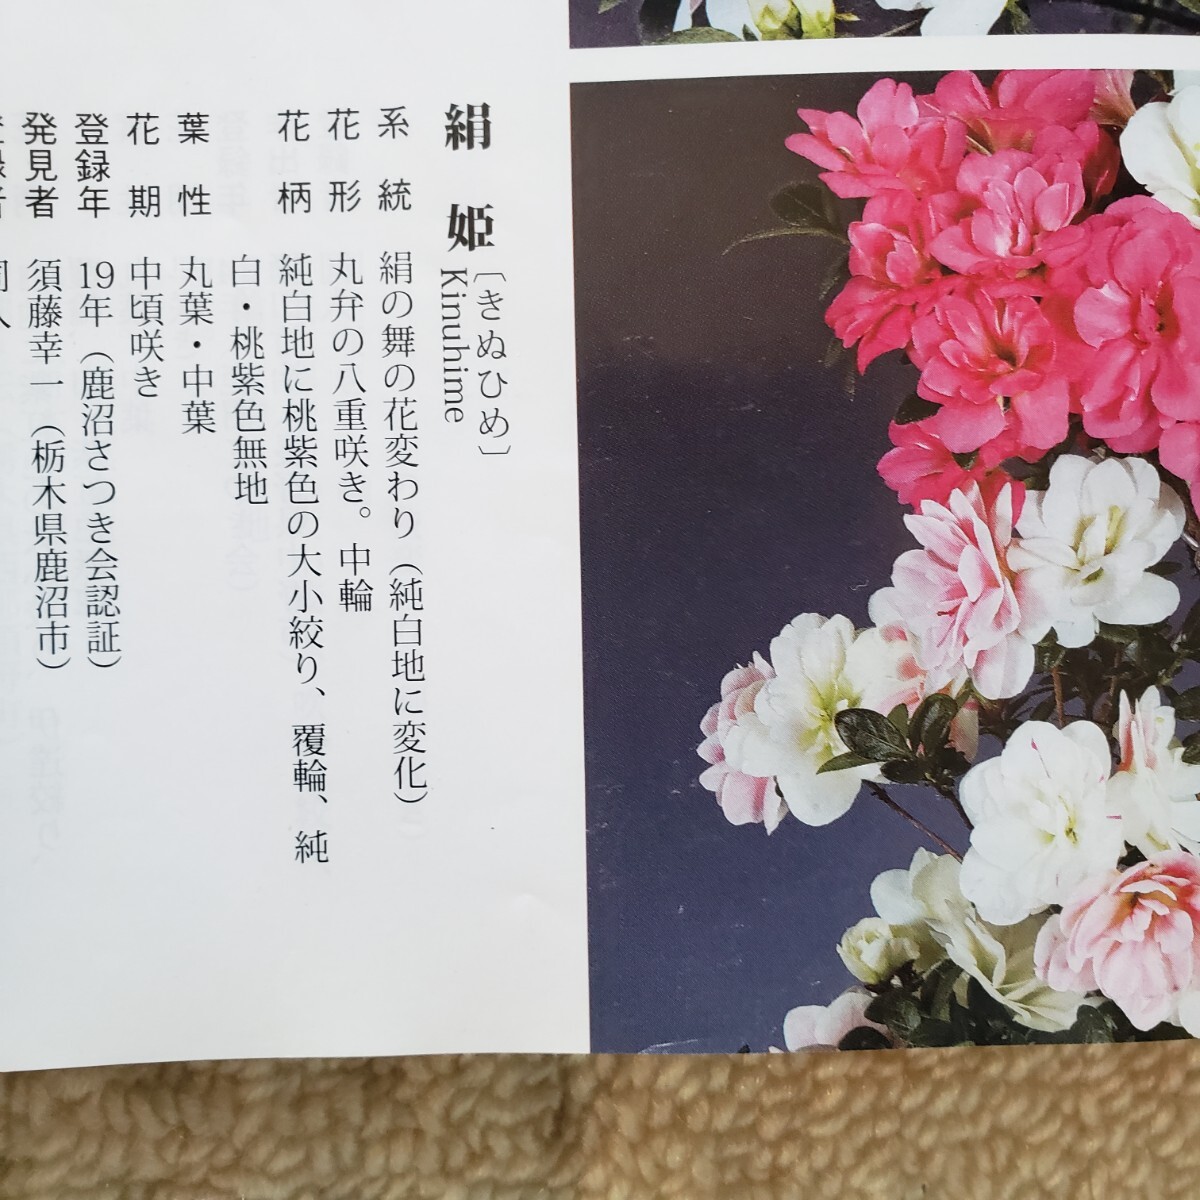 [ 4 сезон. сон ] новый цветок шелк . высота дерева 40.. ширина 30. Rhododendron indicum бонсай 